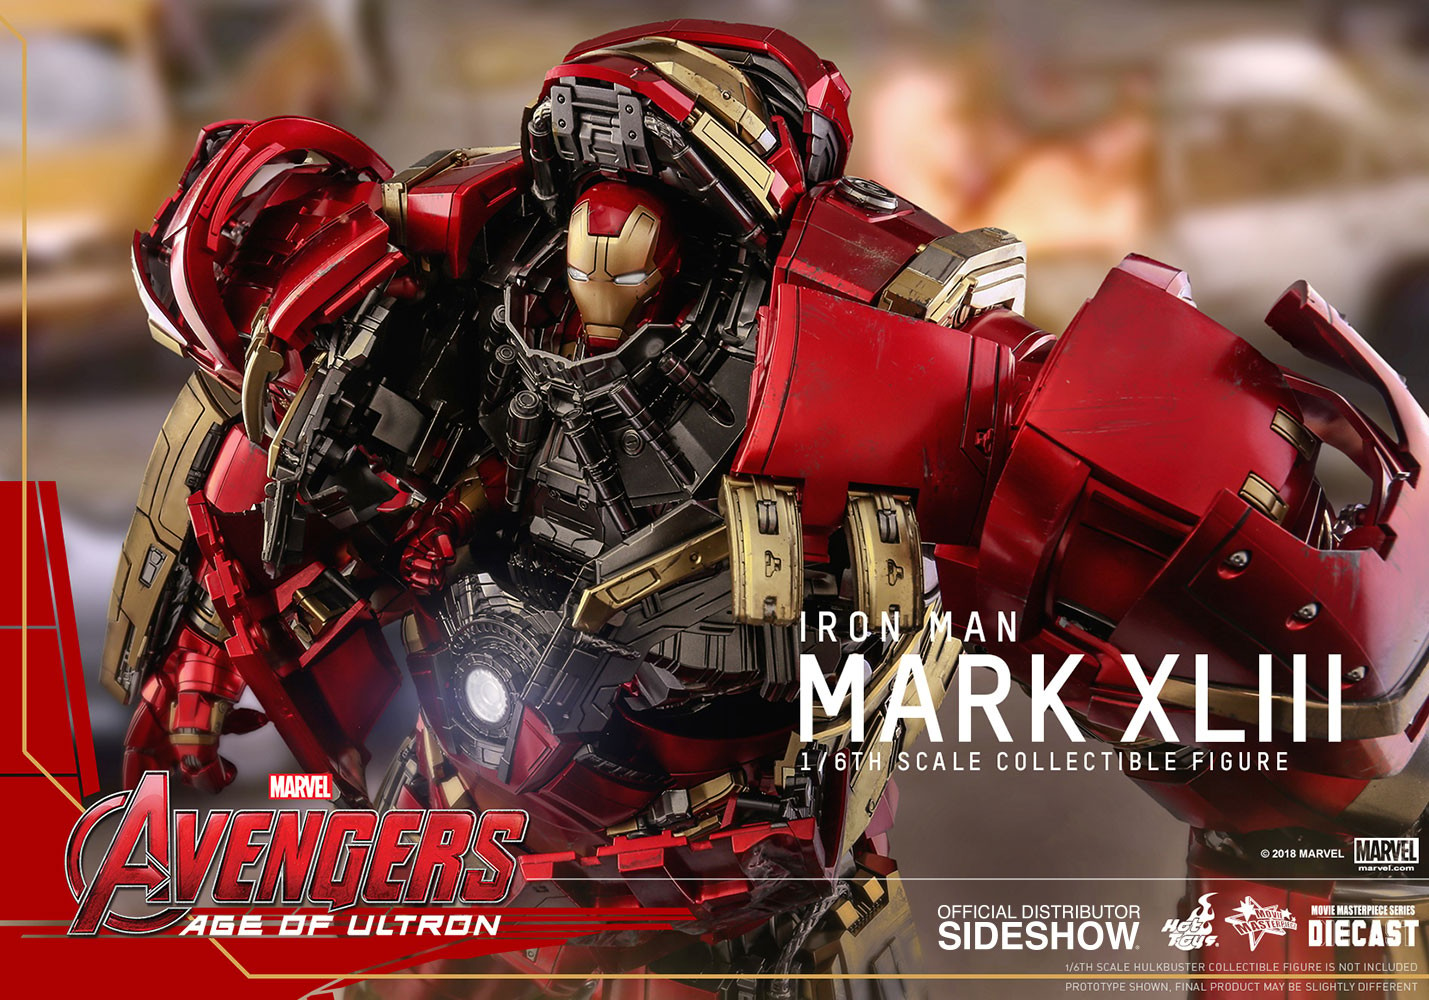 Iron Man Mark XLIII (Prototype Shown) View 5